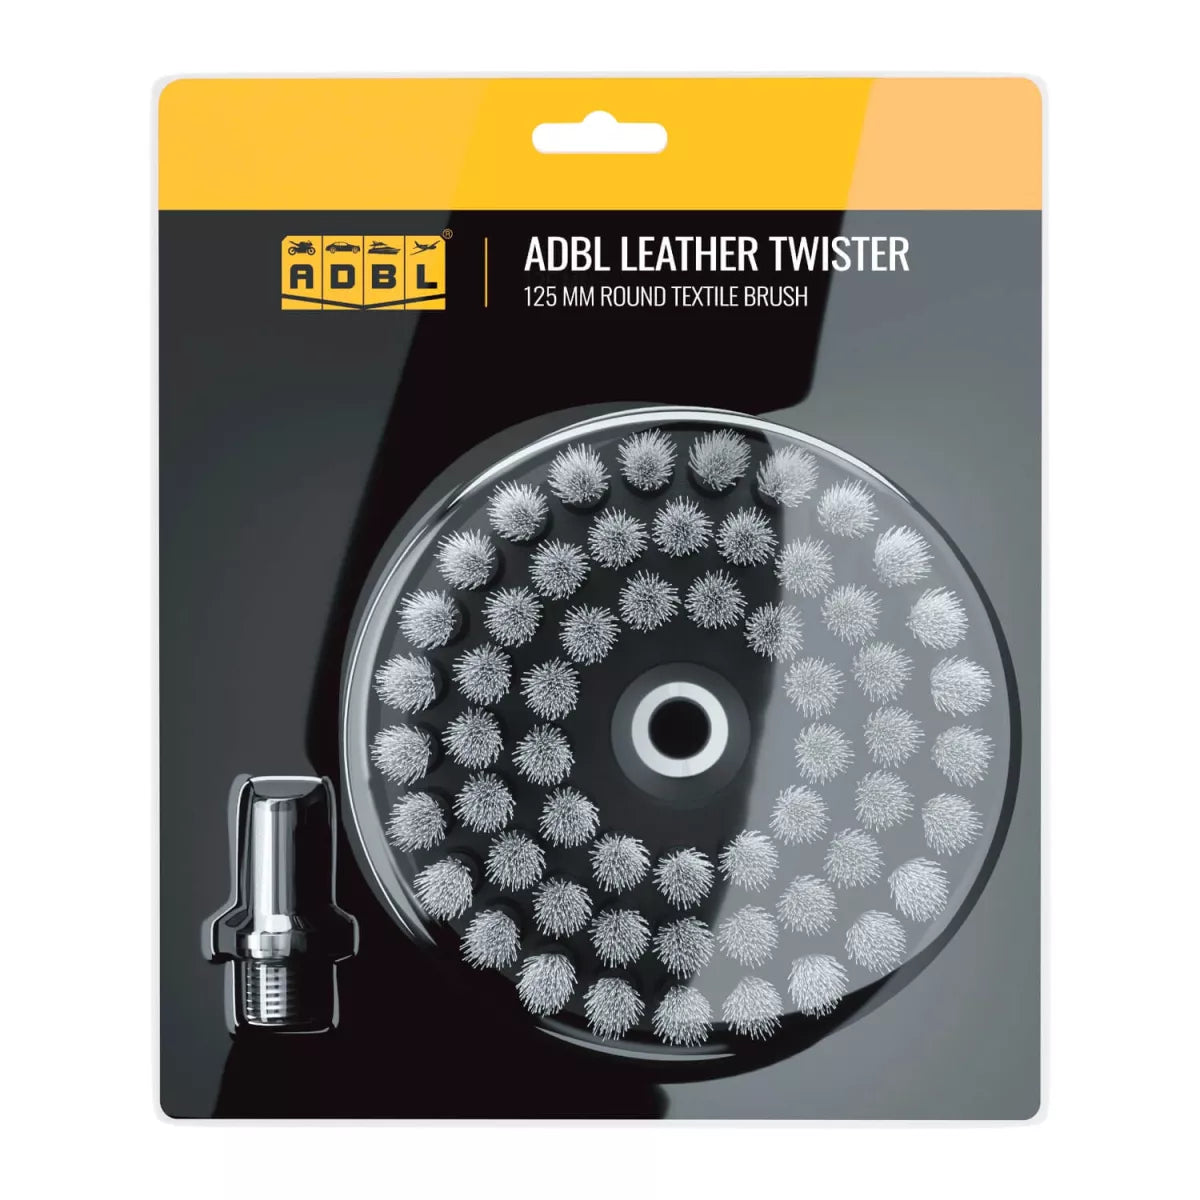 ADBL Leather Twister Reinigungsbürsten-Aufsatz 125mm - 6914